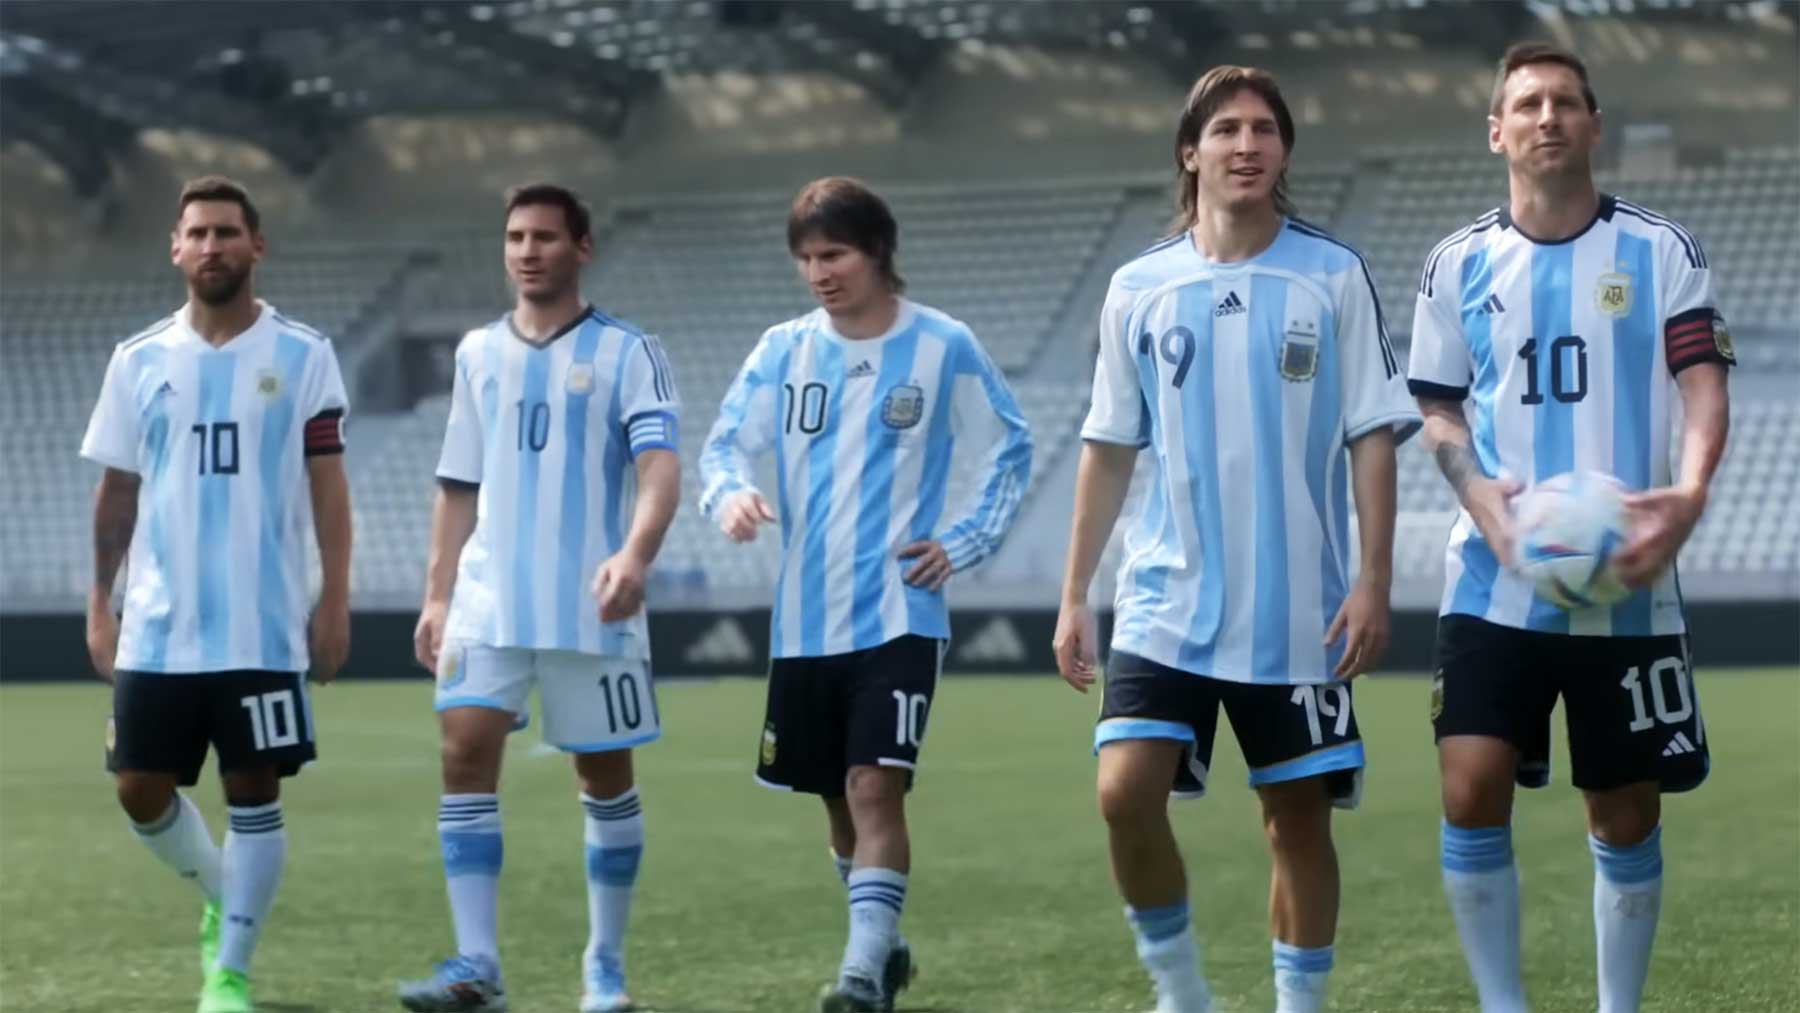 Wie adidas 5 WM-Messis hat miteinander spielen lassen 5-messis-spielen-miteinander-impossible-rondo-adidas 